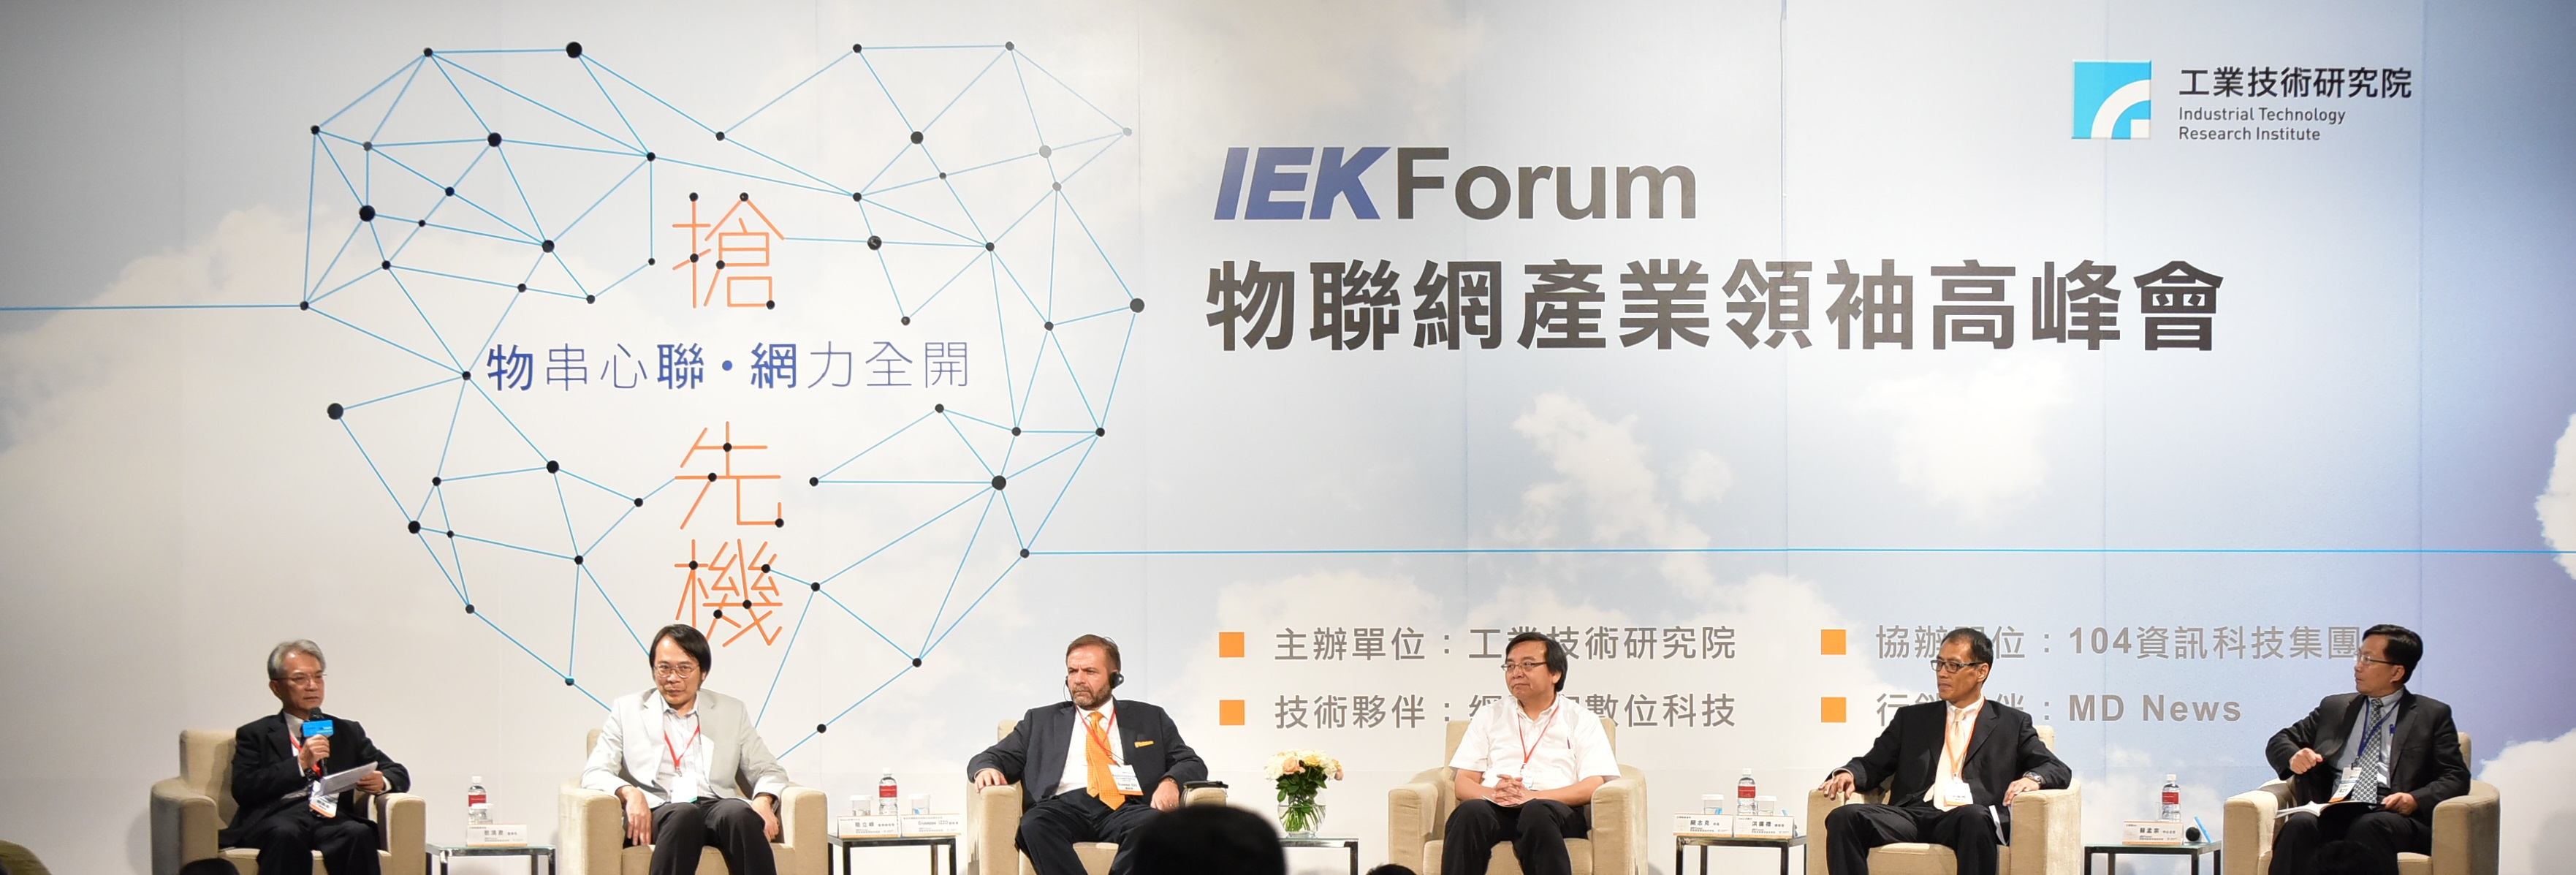 工研院日前舉辦「2015 IEKForum：物聯網產業領袖高峰會」，邀請國內重要企業決策者齊聚一堂，共同研擬迎戰物聯網時代臺灣廠商切入致勝之道。